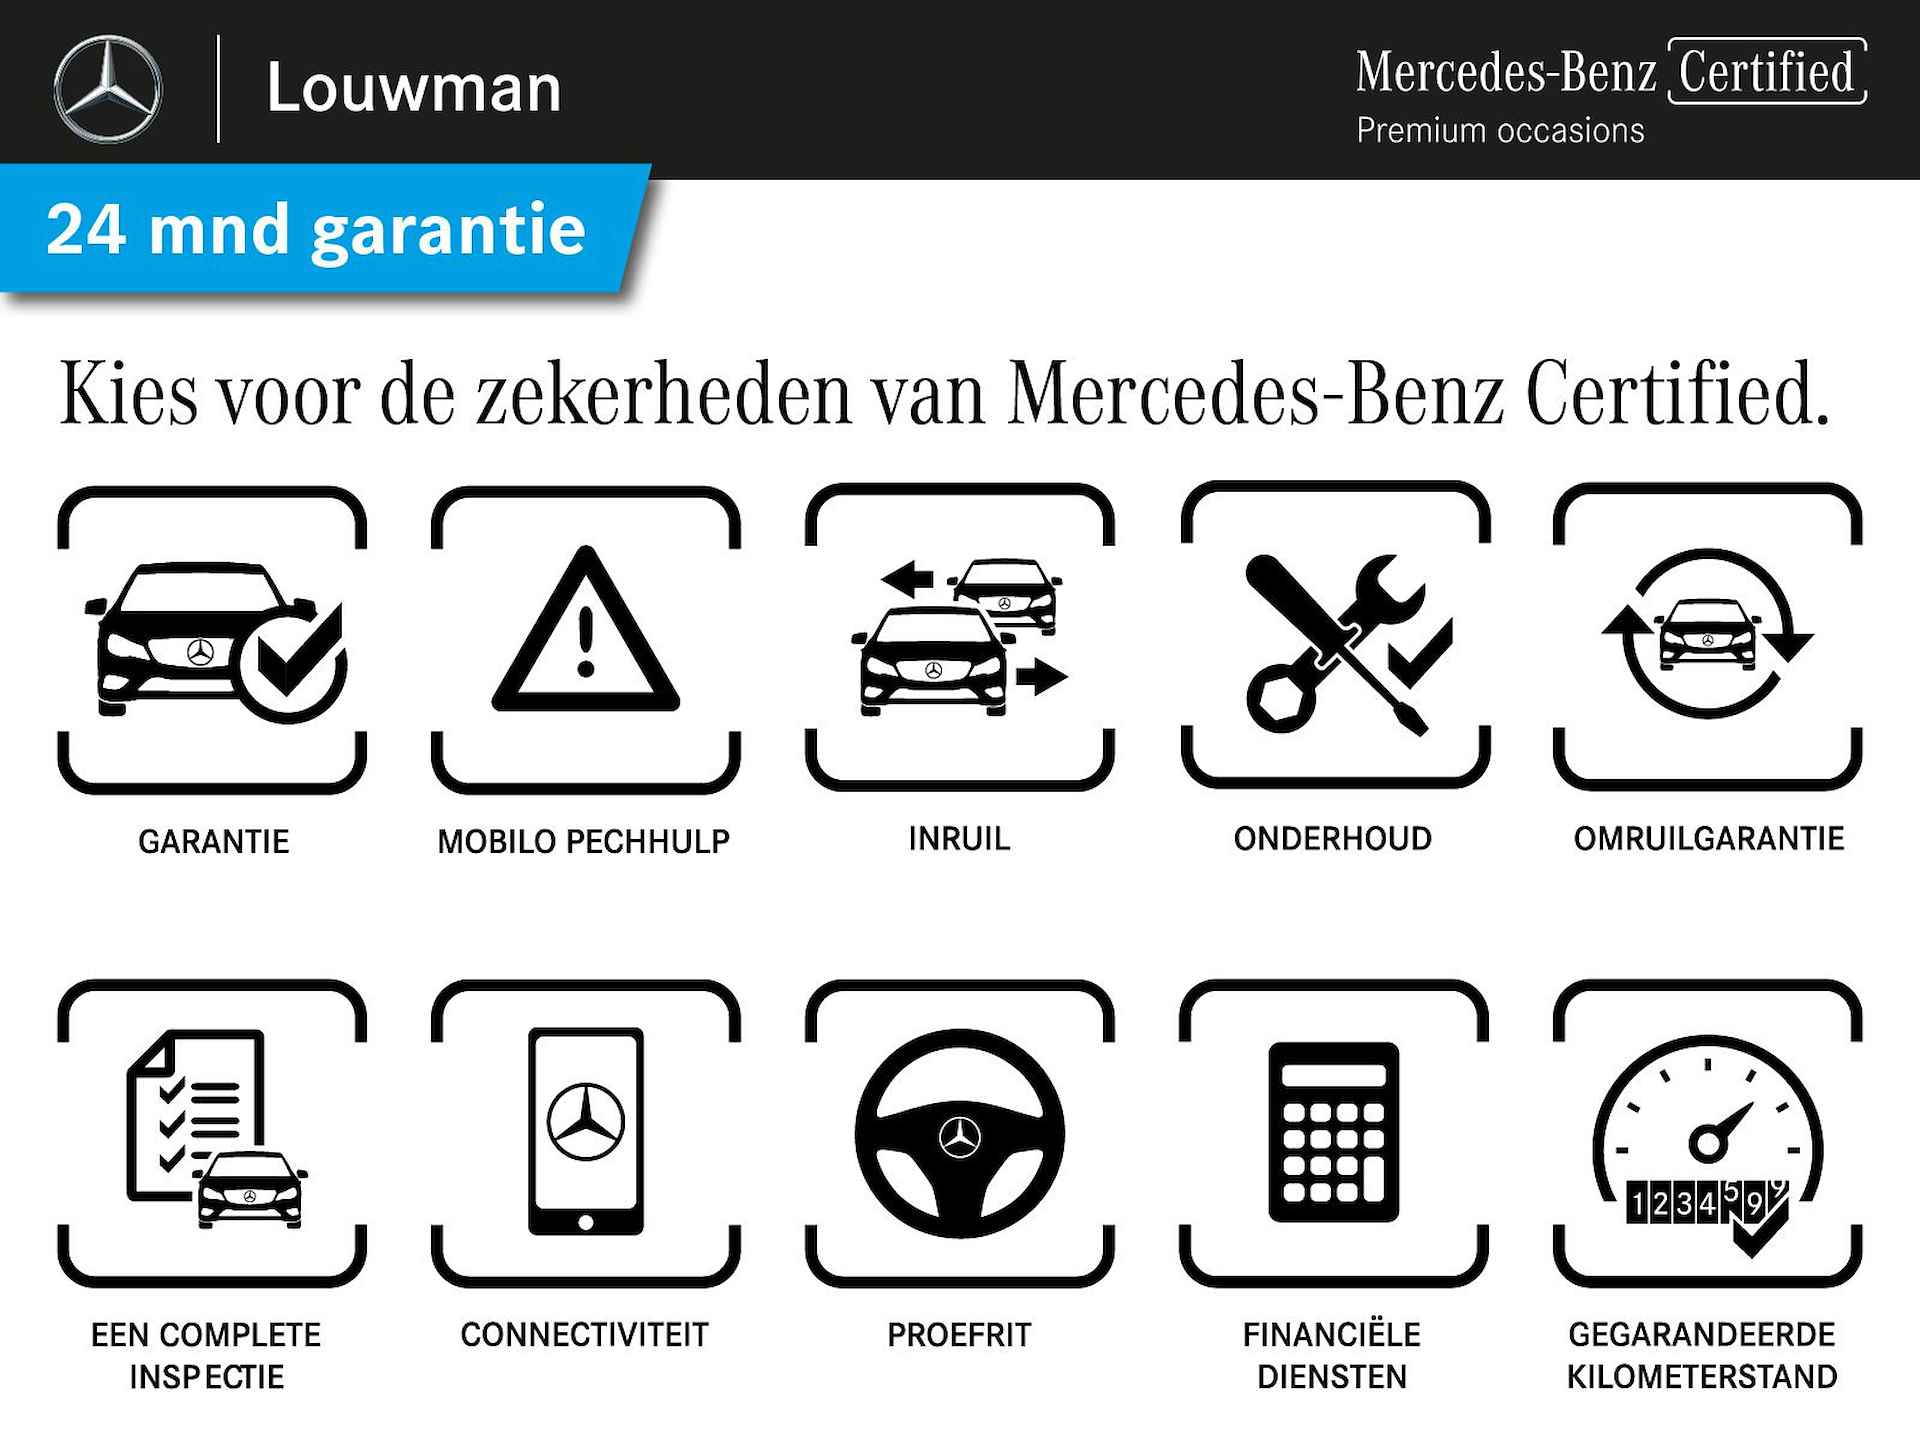 Mercedes-Benz GLA 200 AMG Premium Plus Limited | Multispaaks lichtmetalen velgen | Treeplanken | Navigatie | Parking support | Leder bekleding | inclusief 24 maanden MB Certified garantie voor europa - 39/39